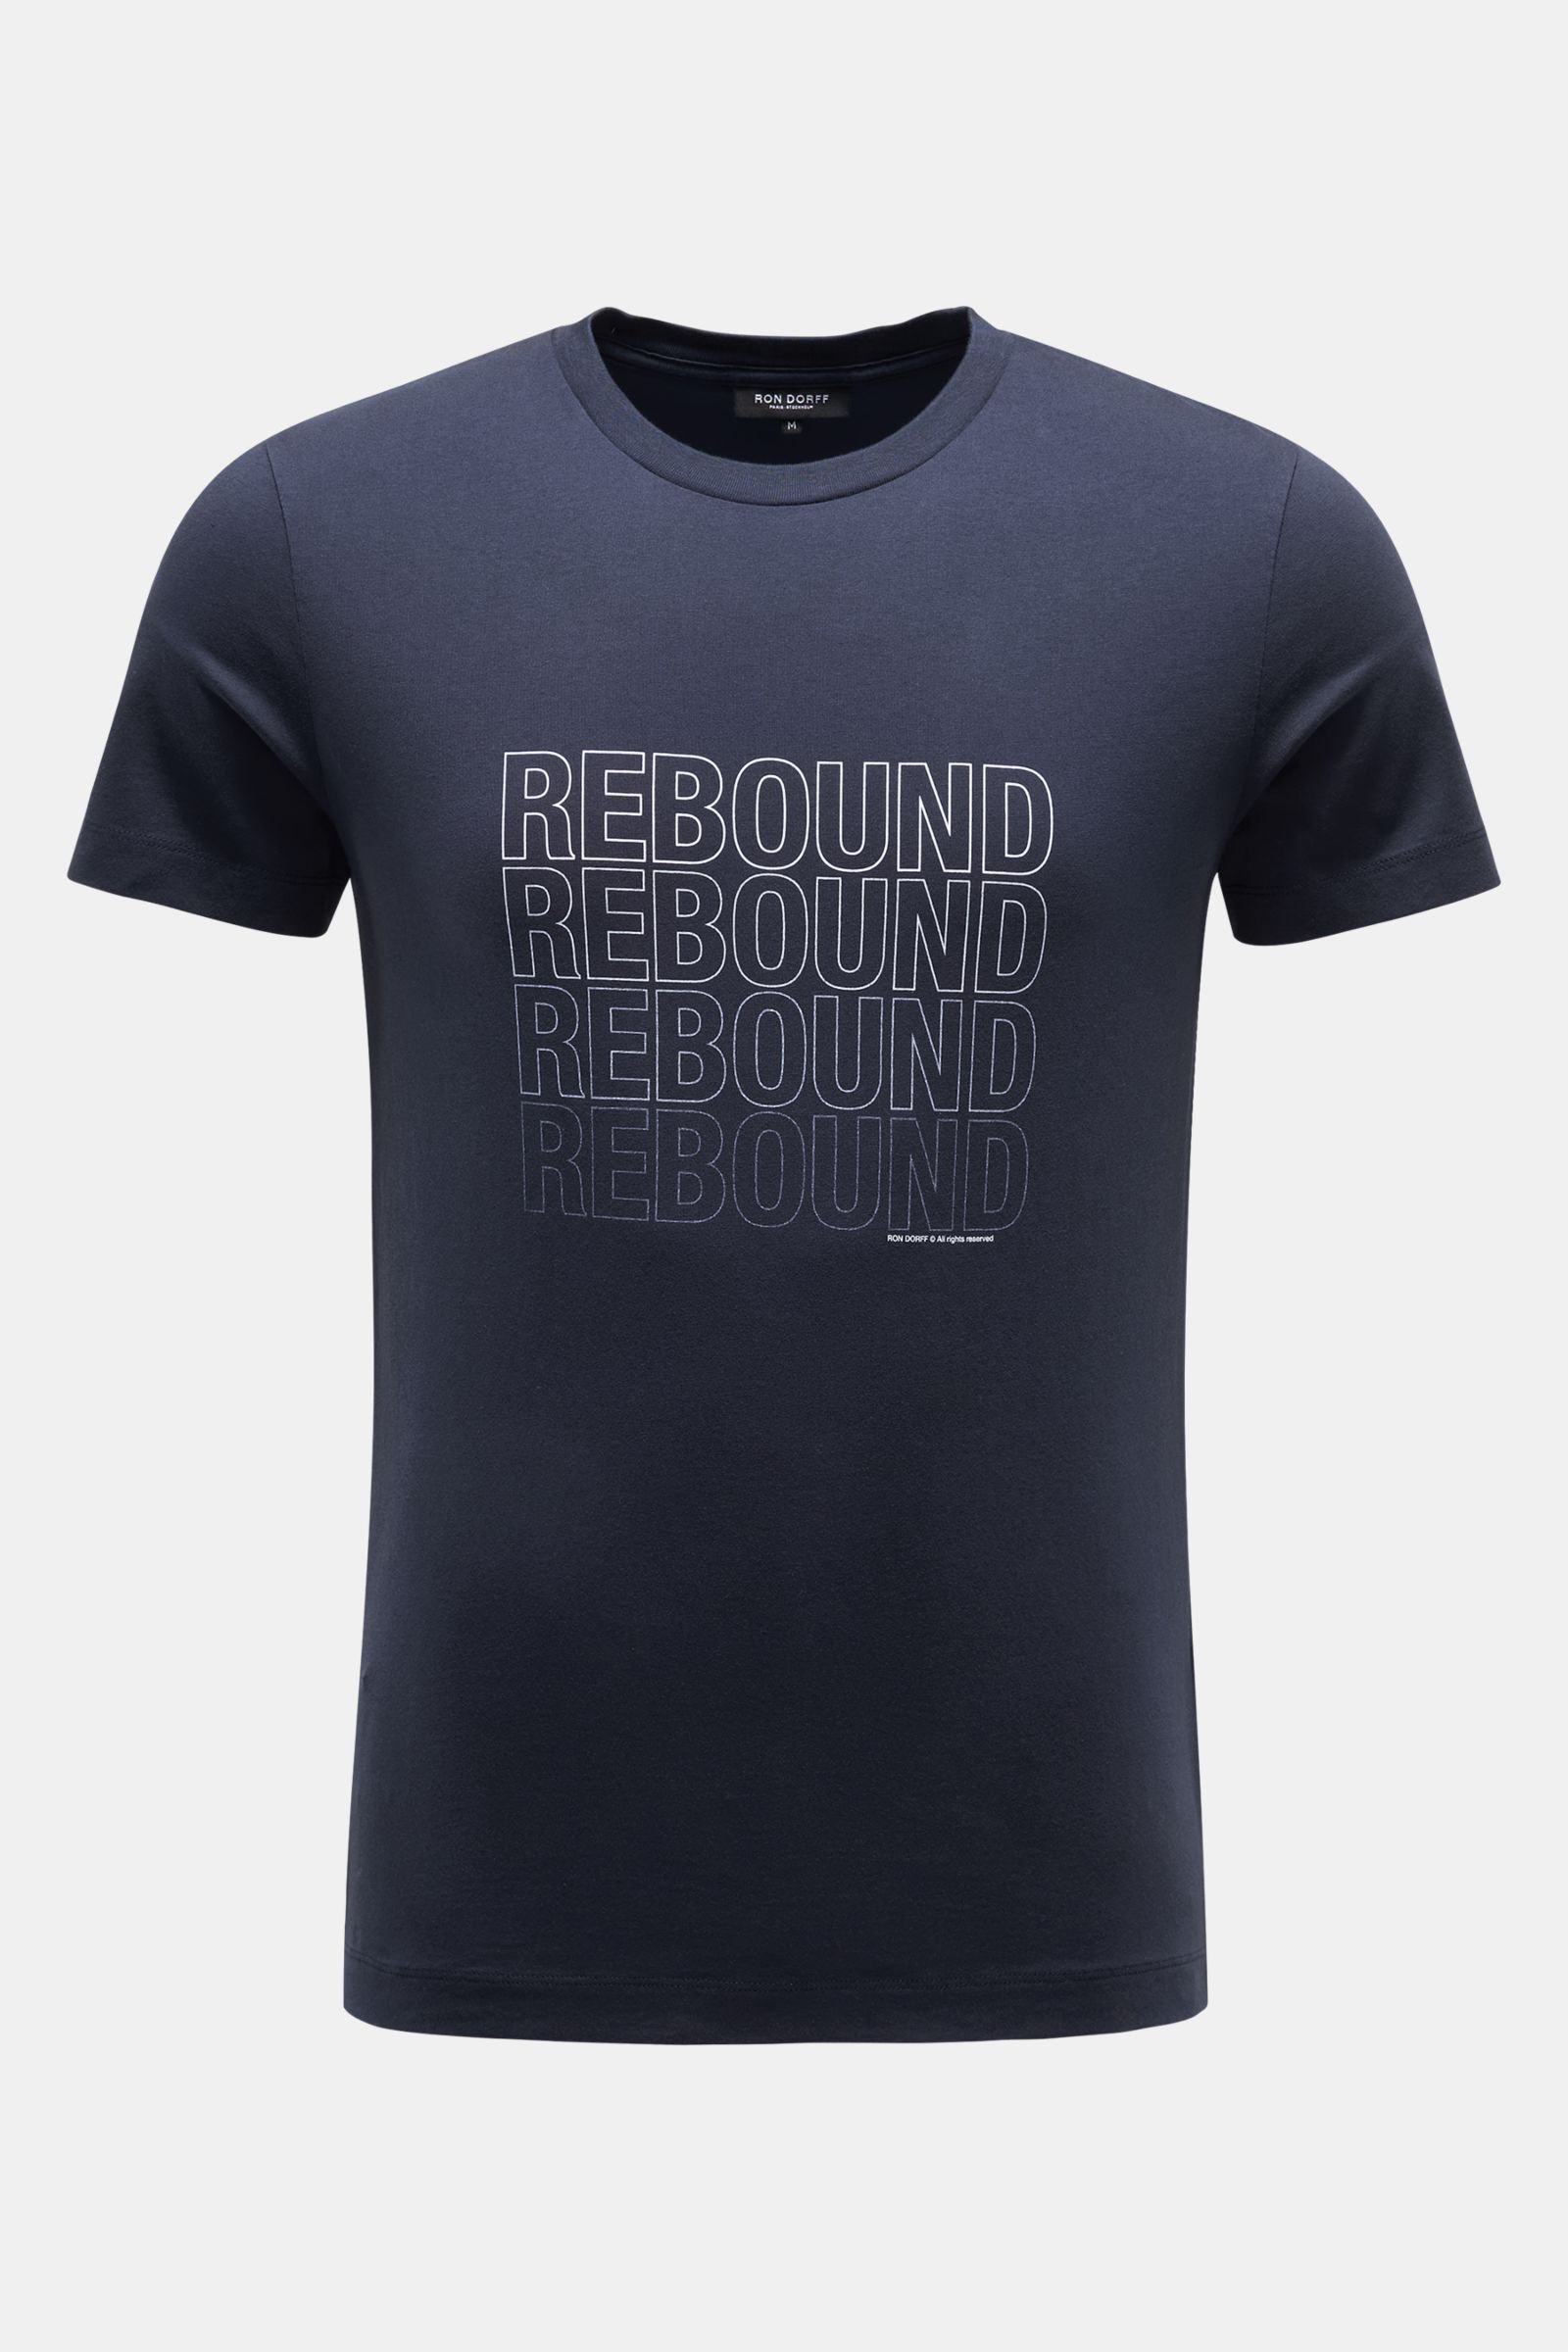 Rundhals-T-Shirt 'Rebound' navy